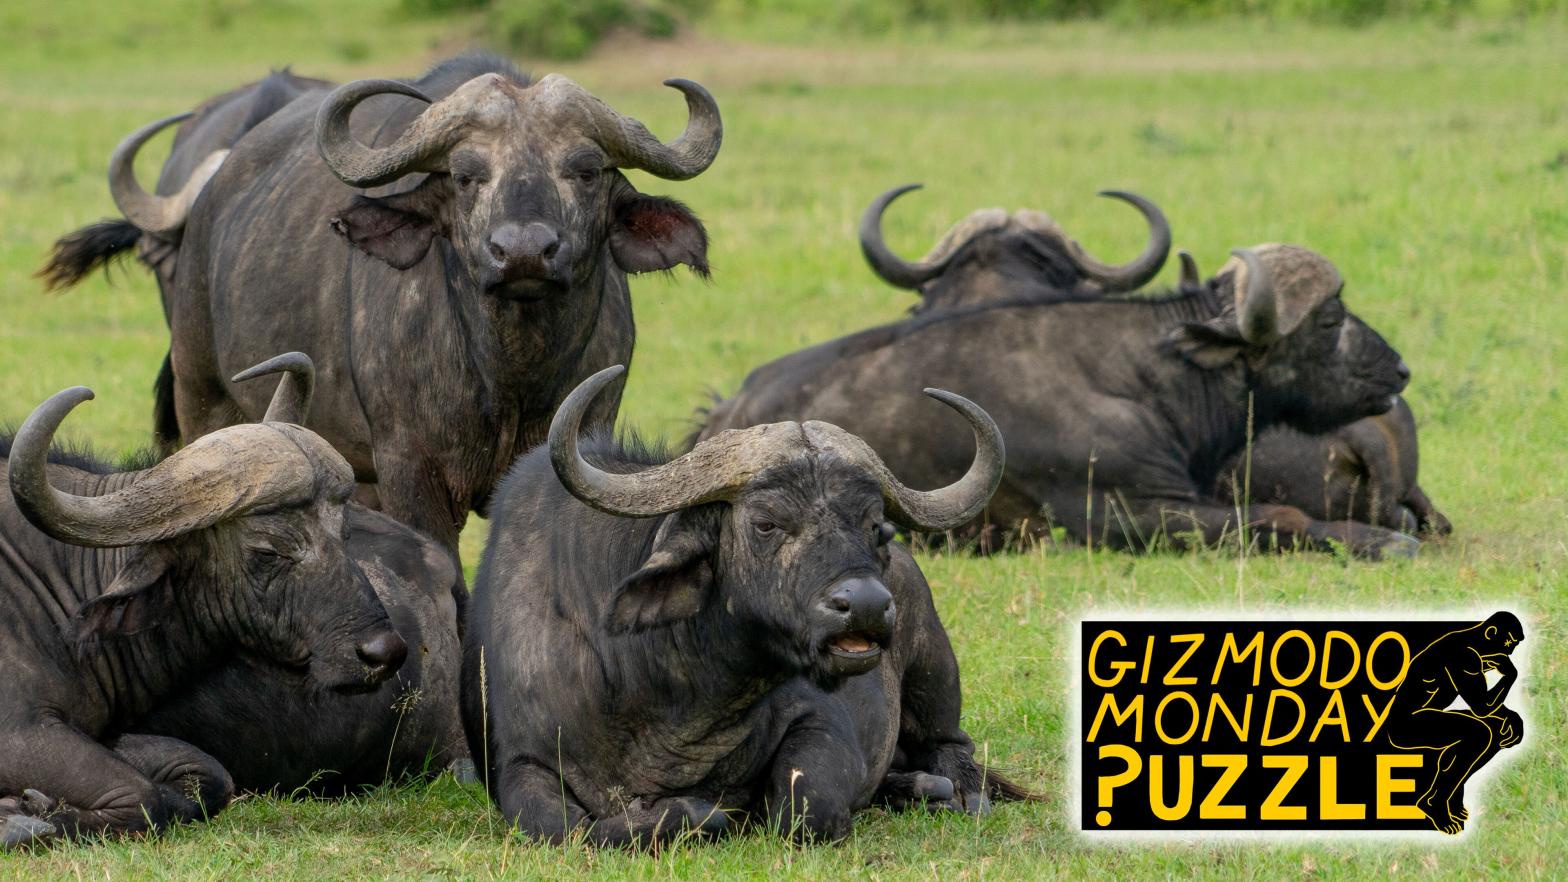 Gizmodo Puzzle: Buffalo buffalo Buffalo buffalo buffalo buffalo Buffalo buffalo